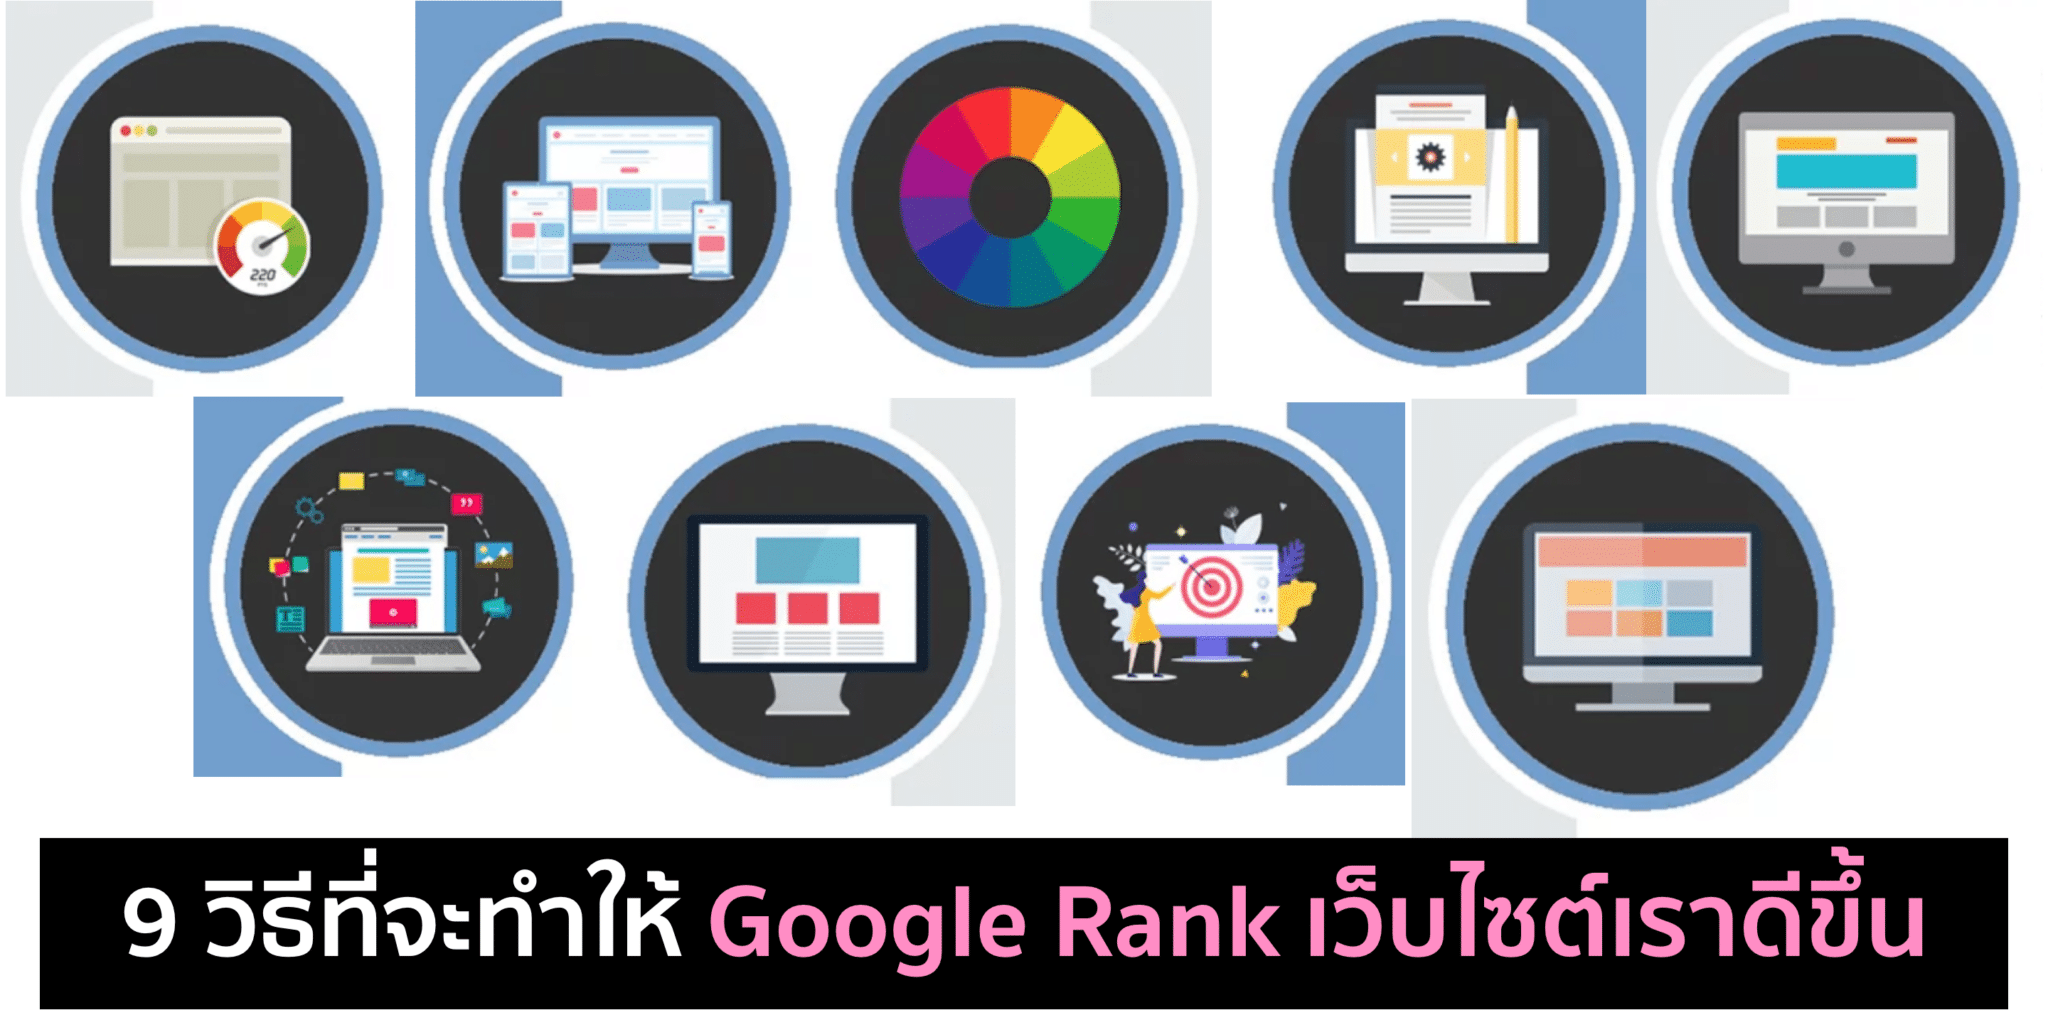 9 วิธีที่จะทำให้ Google Rank เว็บไซต์เราดีขึ้น